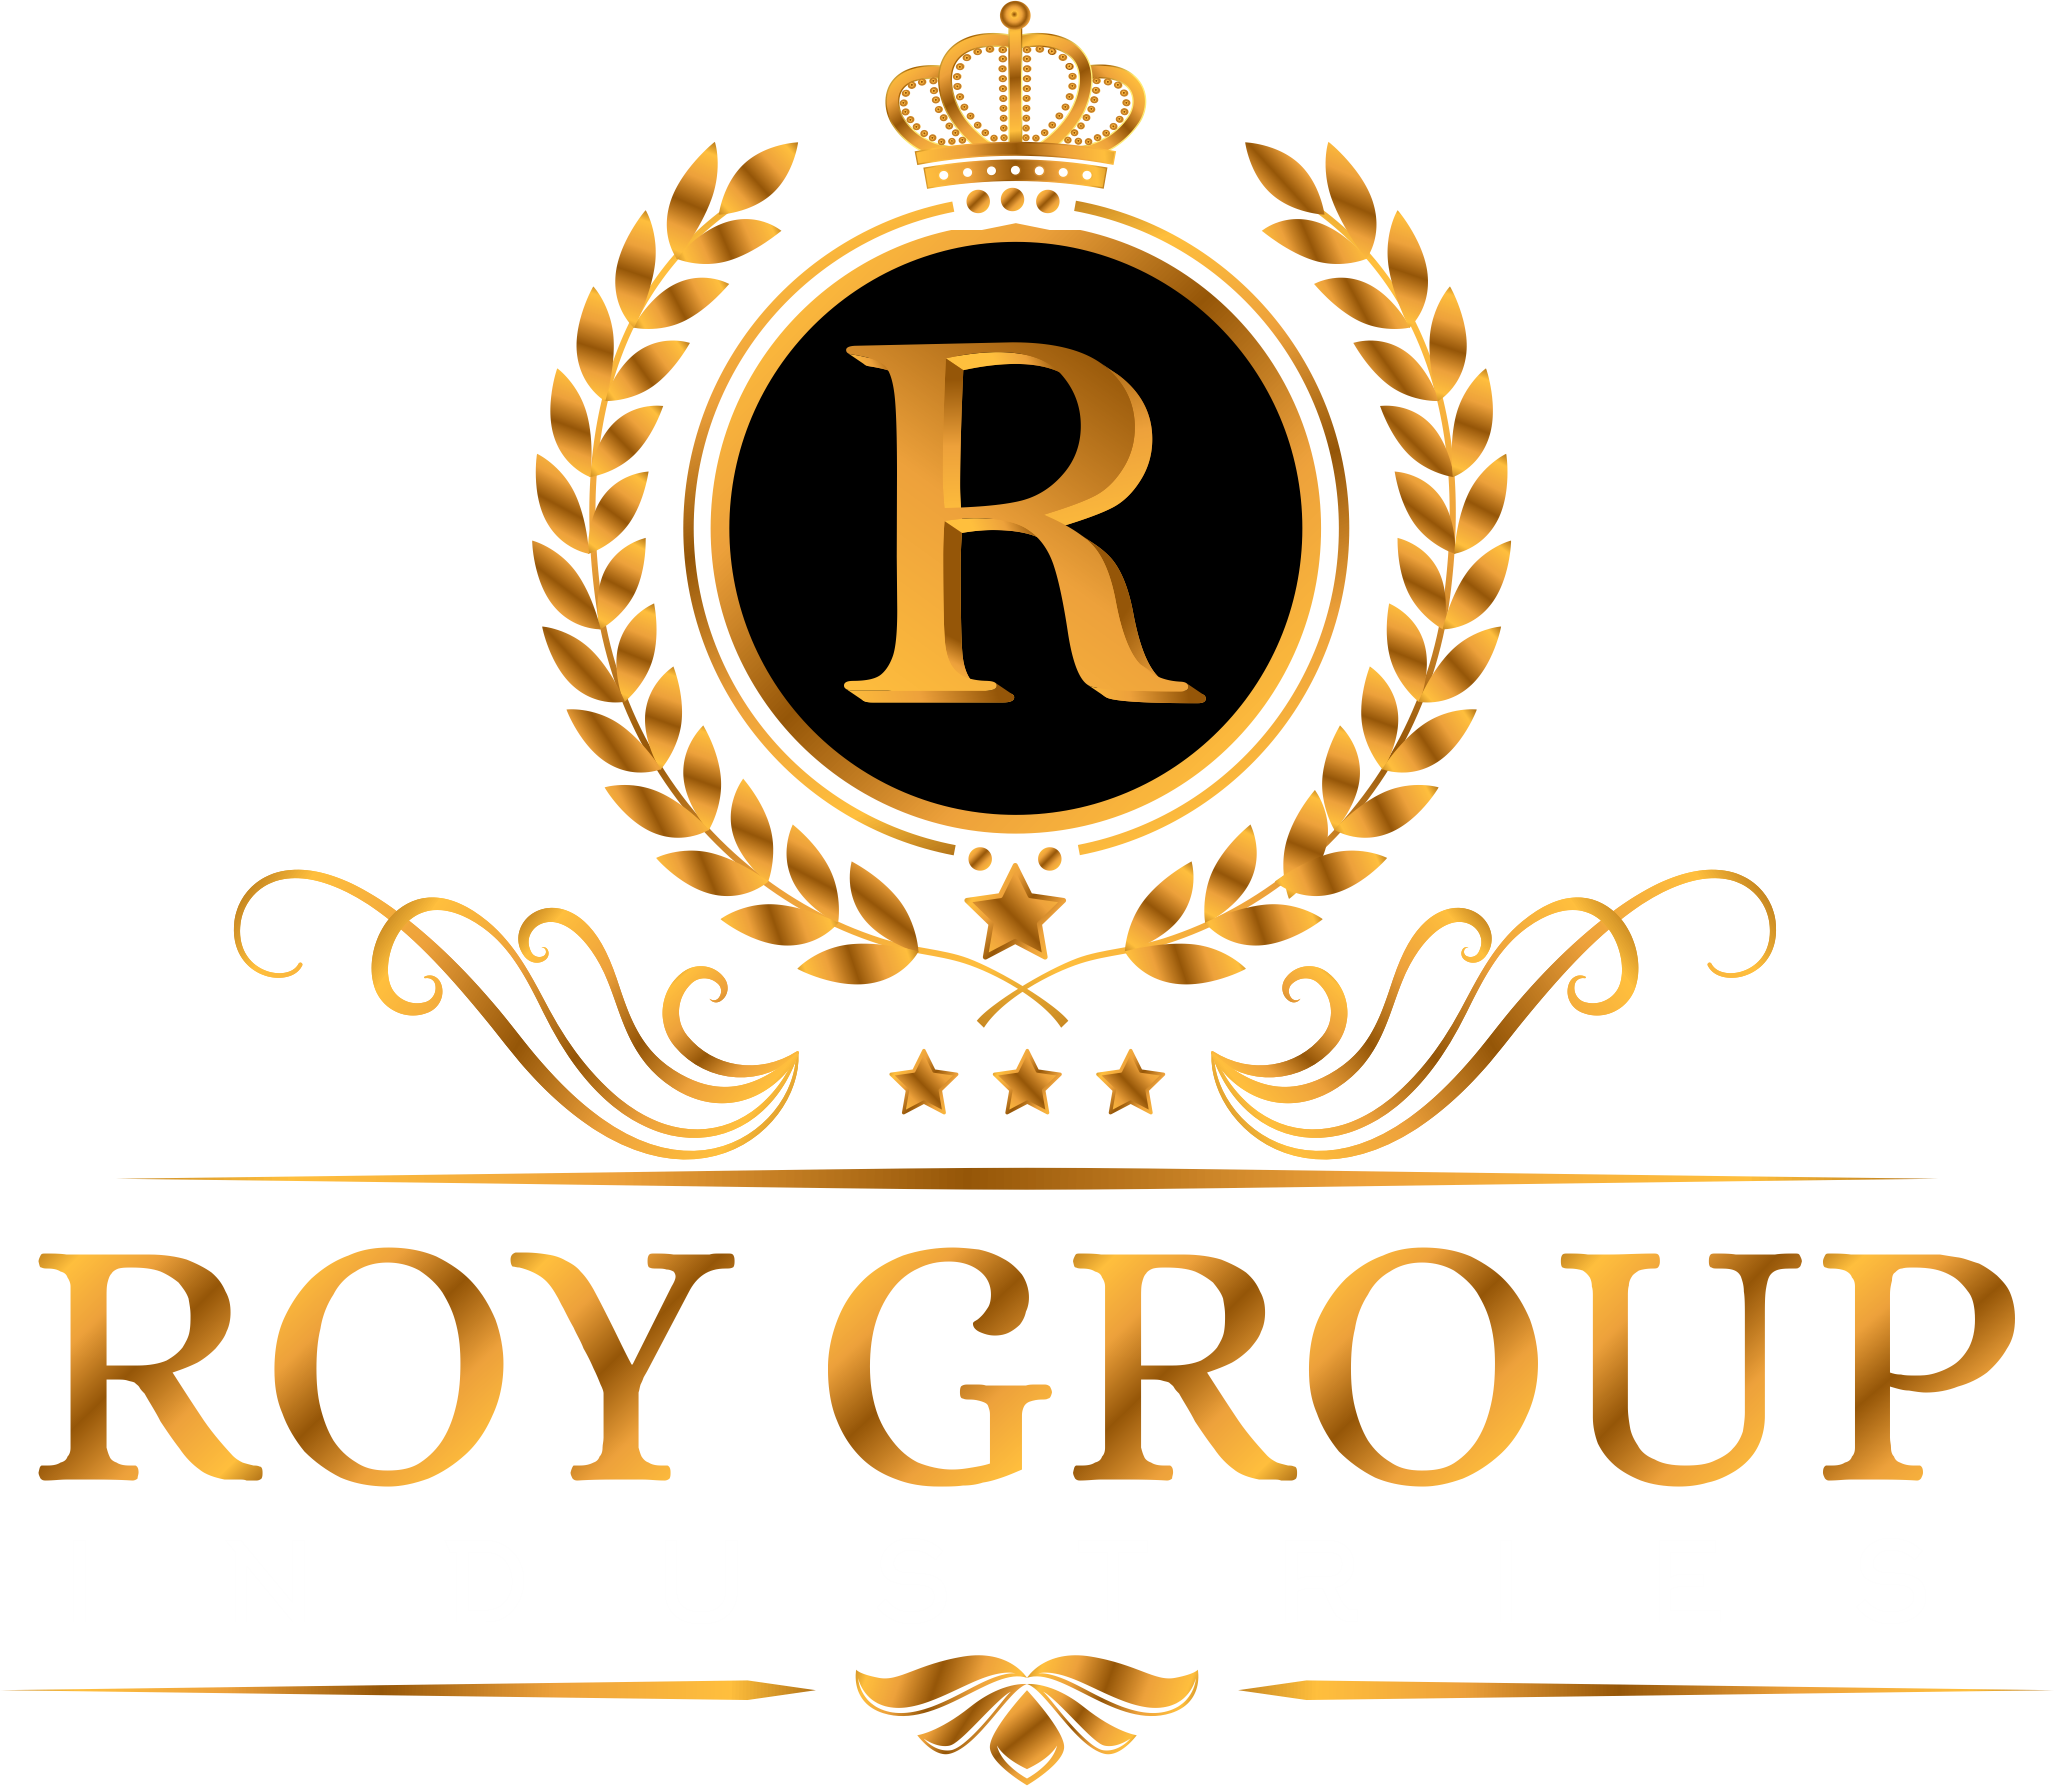 Royal Groups logo